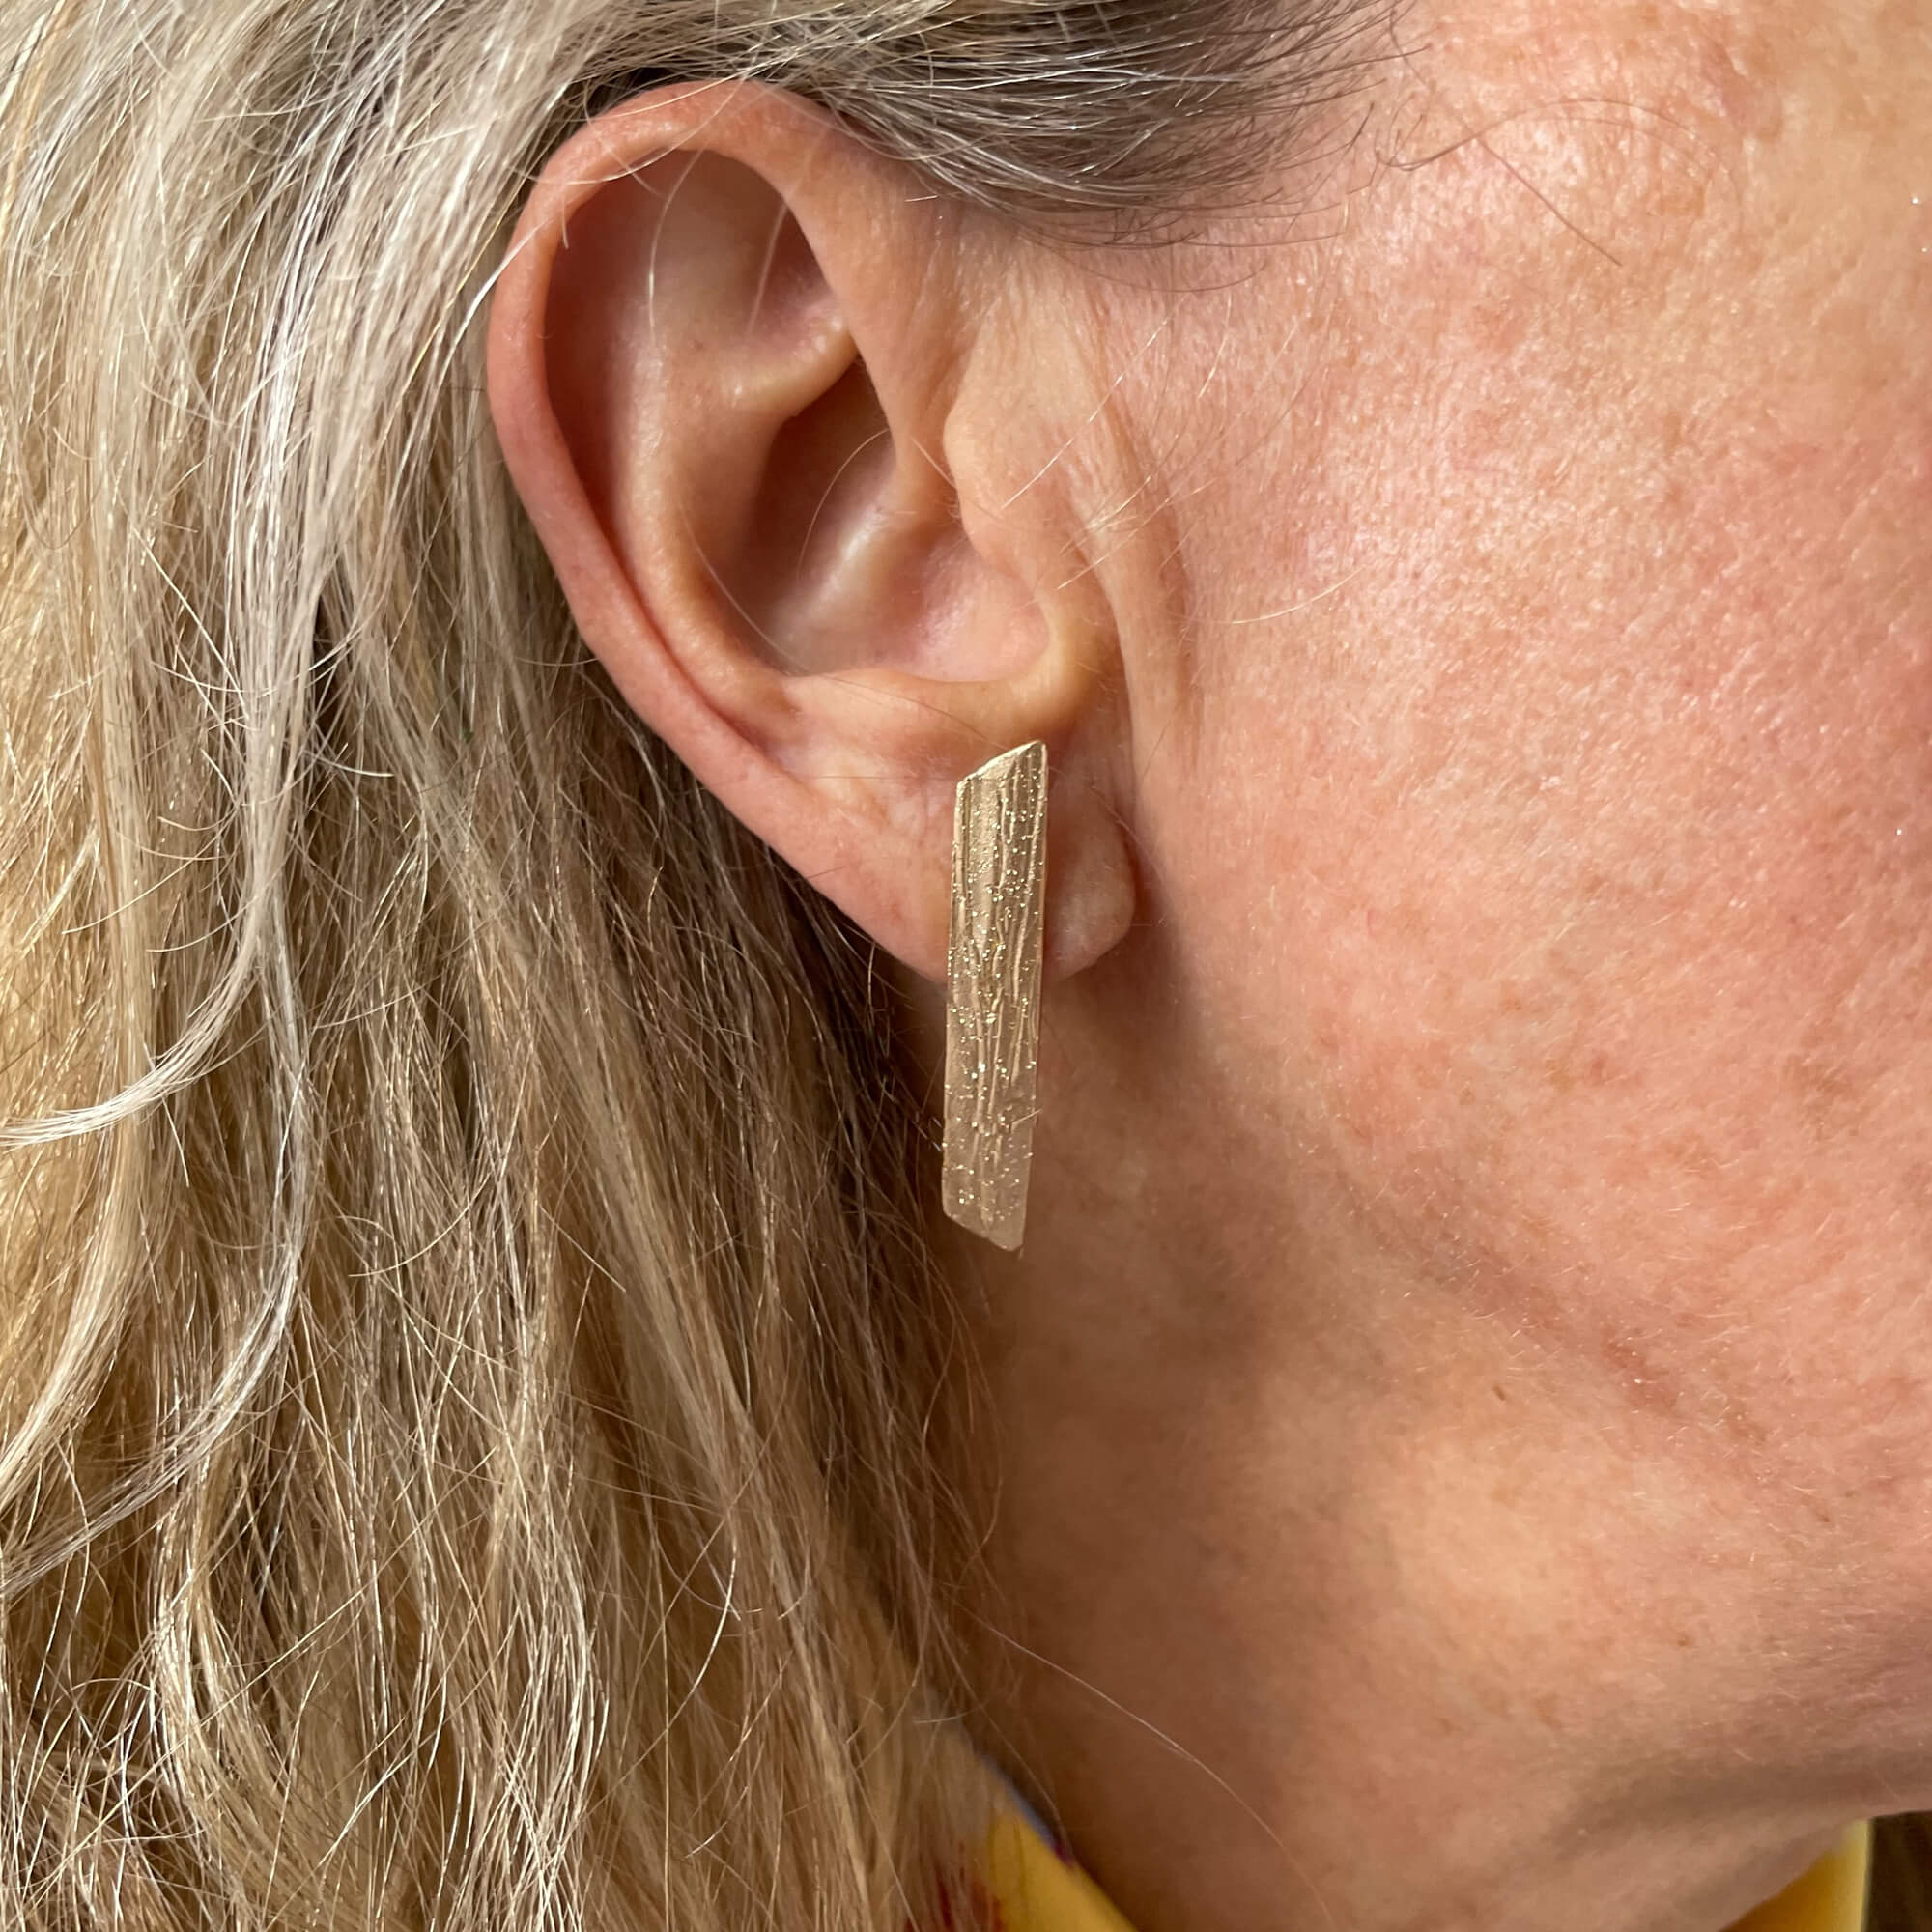 Beautiful golden rod earrings of 18kt